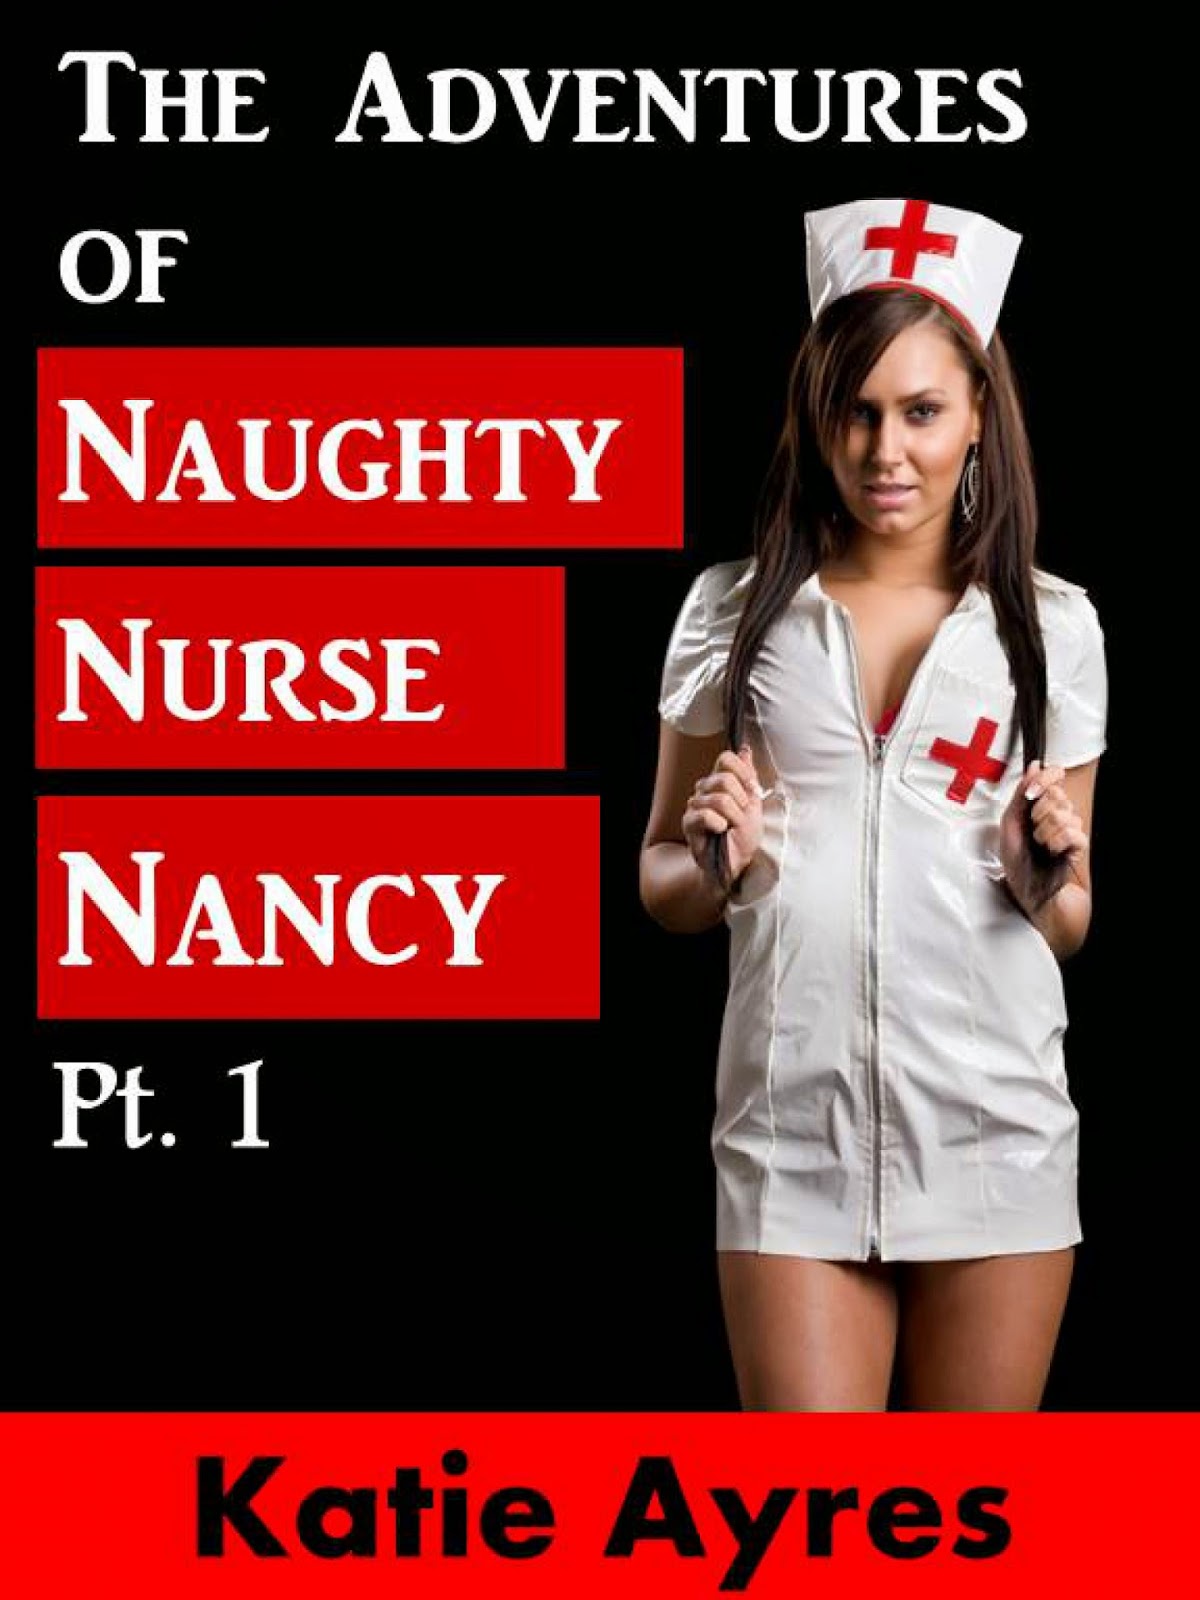 Naughty nurse kara carter power smoking